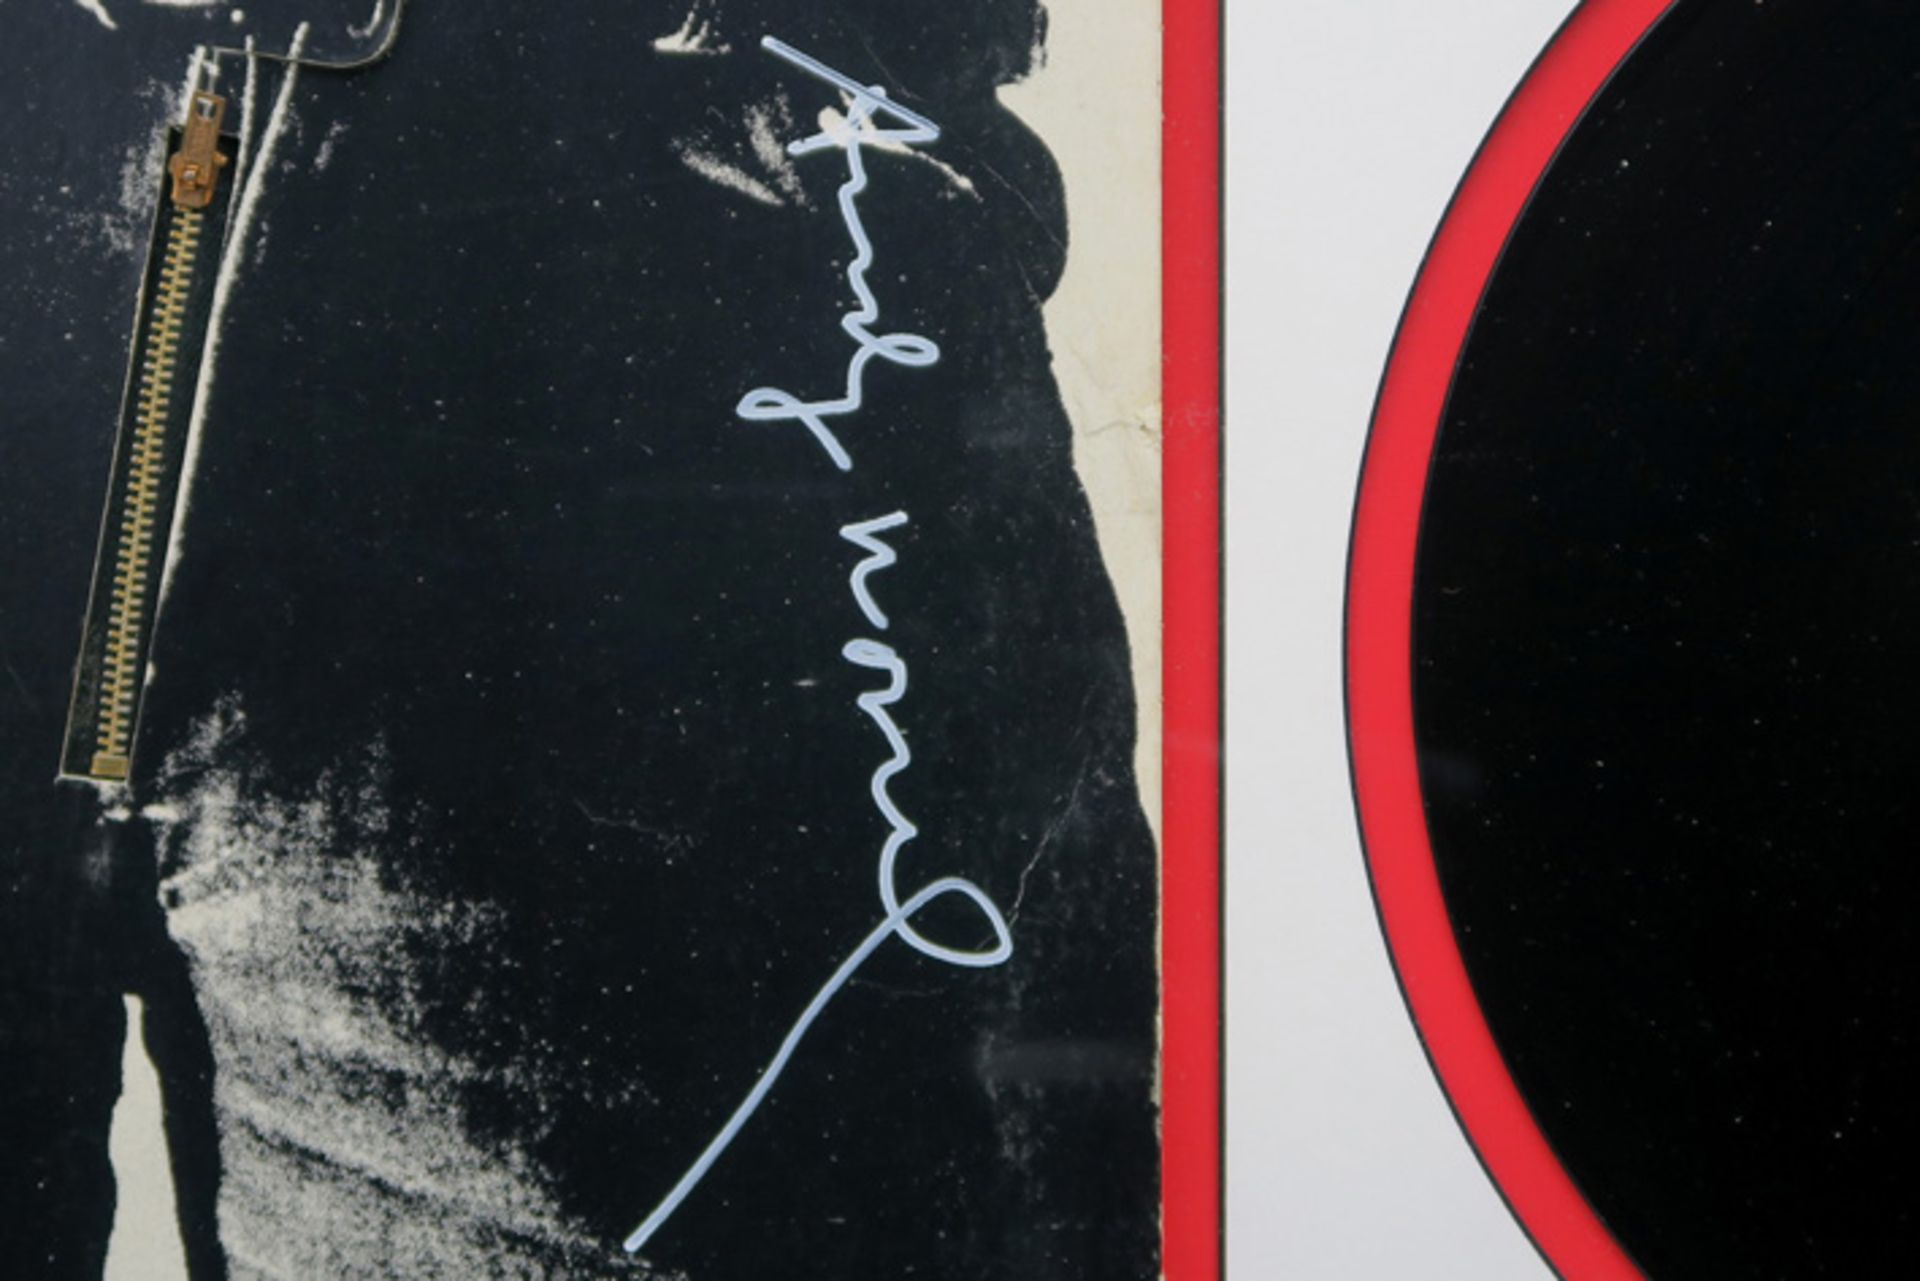 WARHOL ANDY (1930 - 1987) zeldzame elpeehoes ontworpen door Warhol, de originele versie met echte - Image 2 of 2